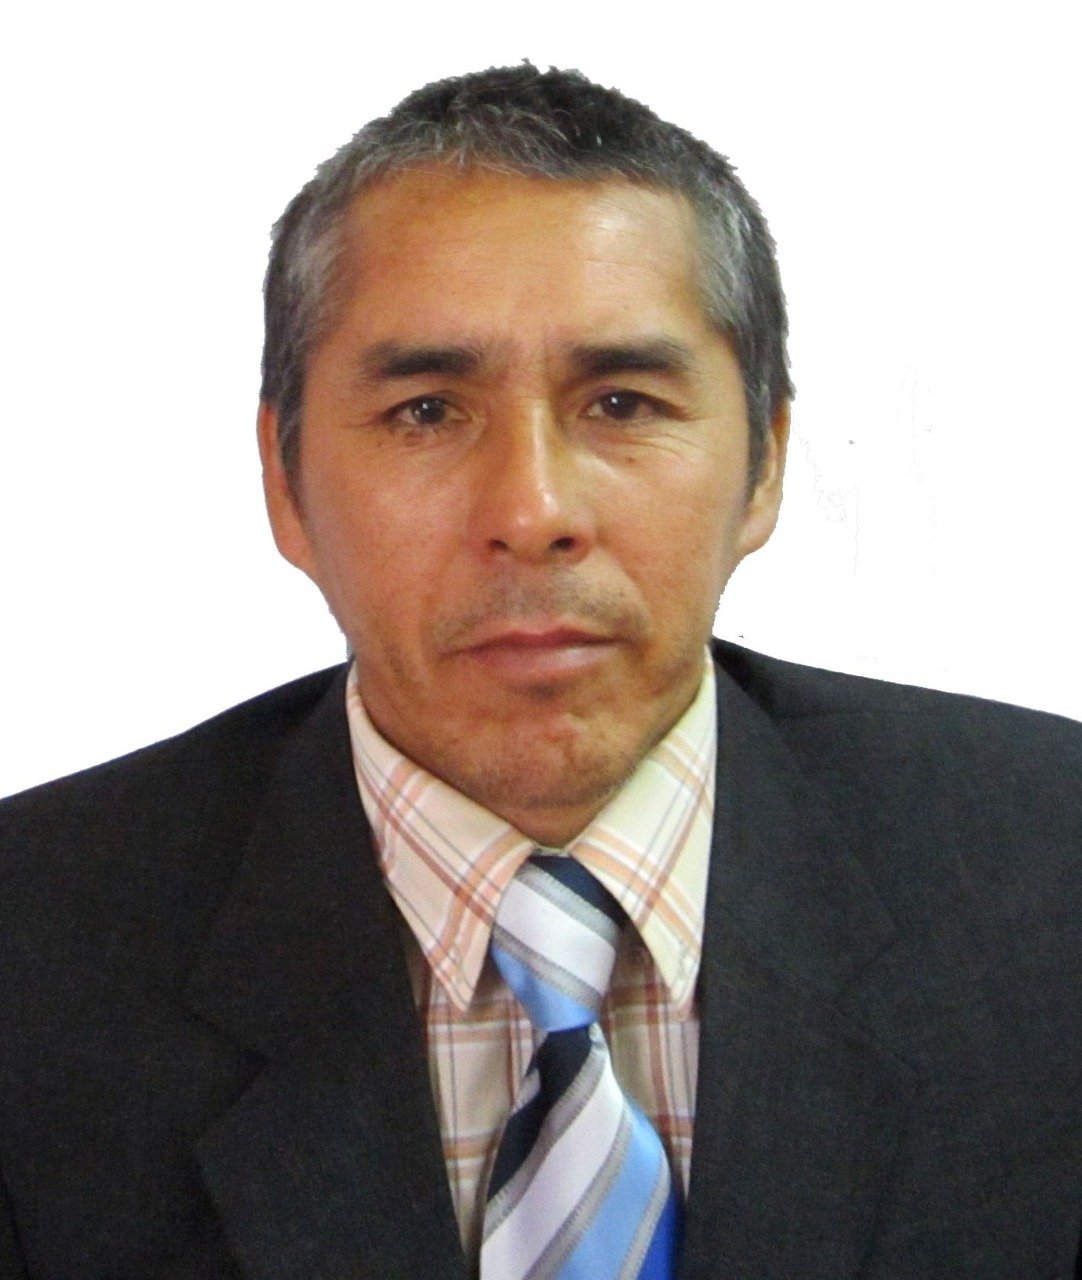 Anc. Rogelio Alva Vásquez.